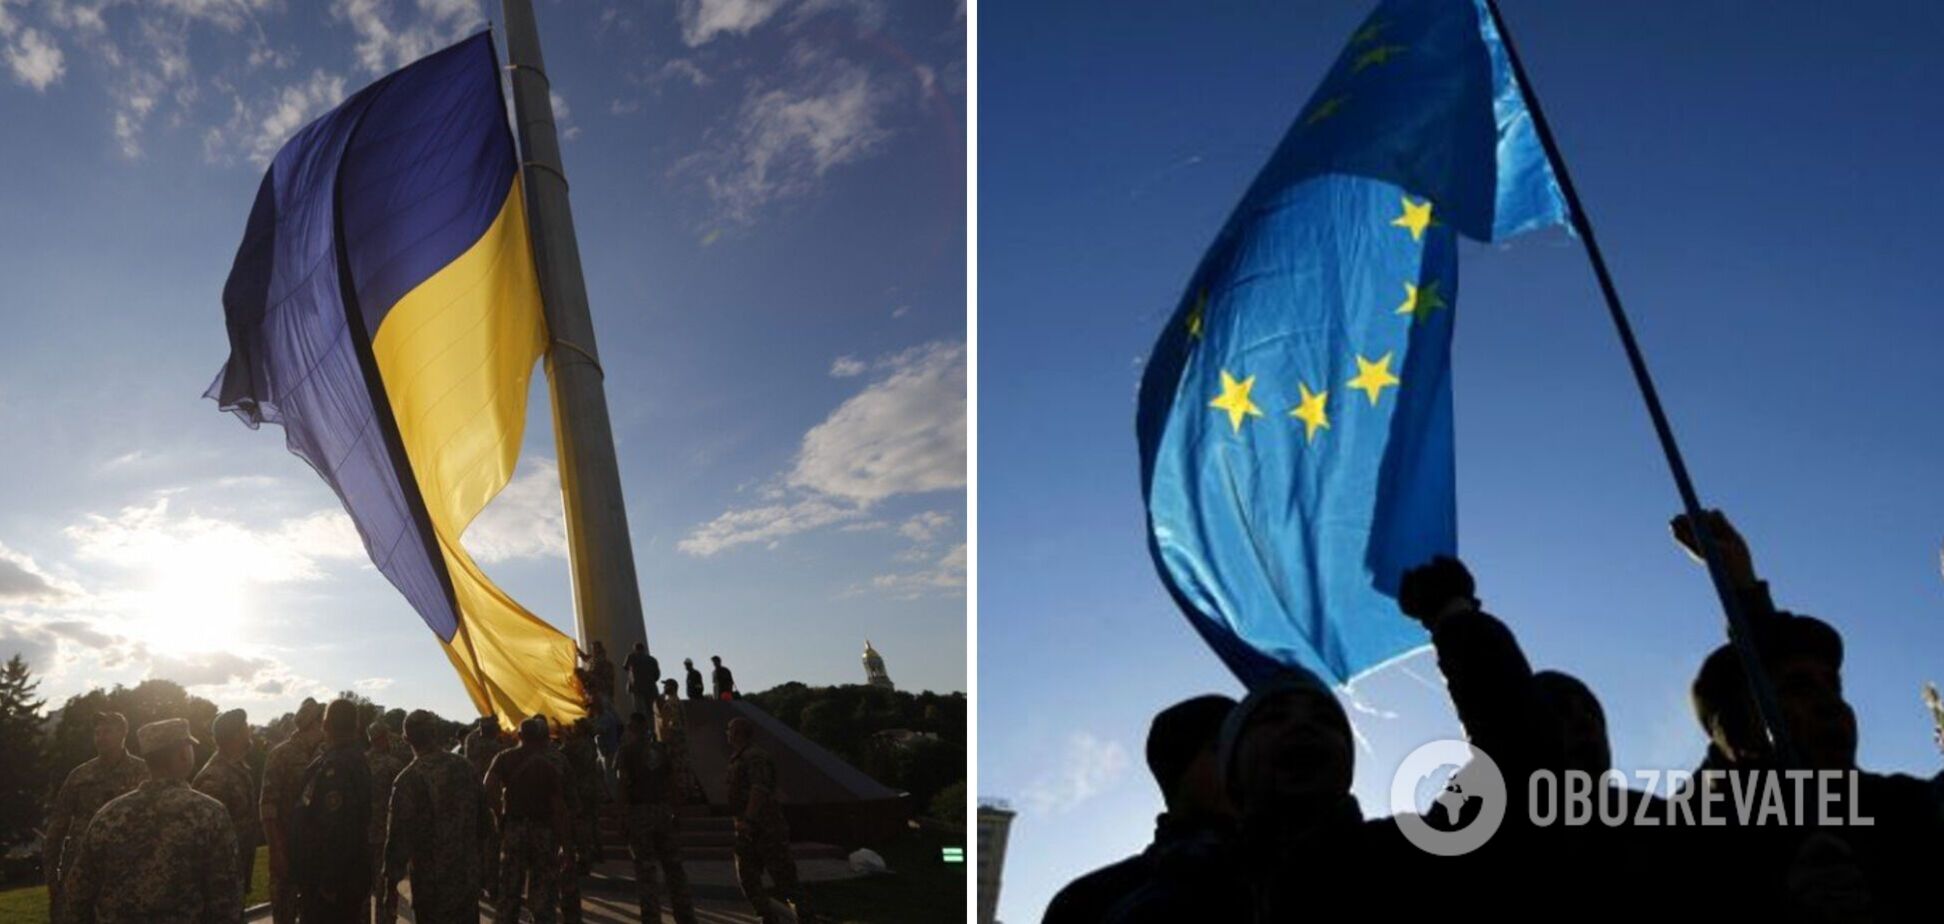 Єврокомісія порекомендує надати Україні статус кандидата в ЄС, але із застереженнями та умовами